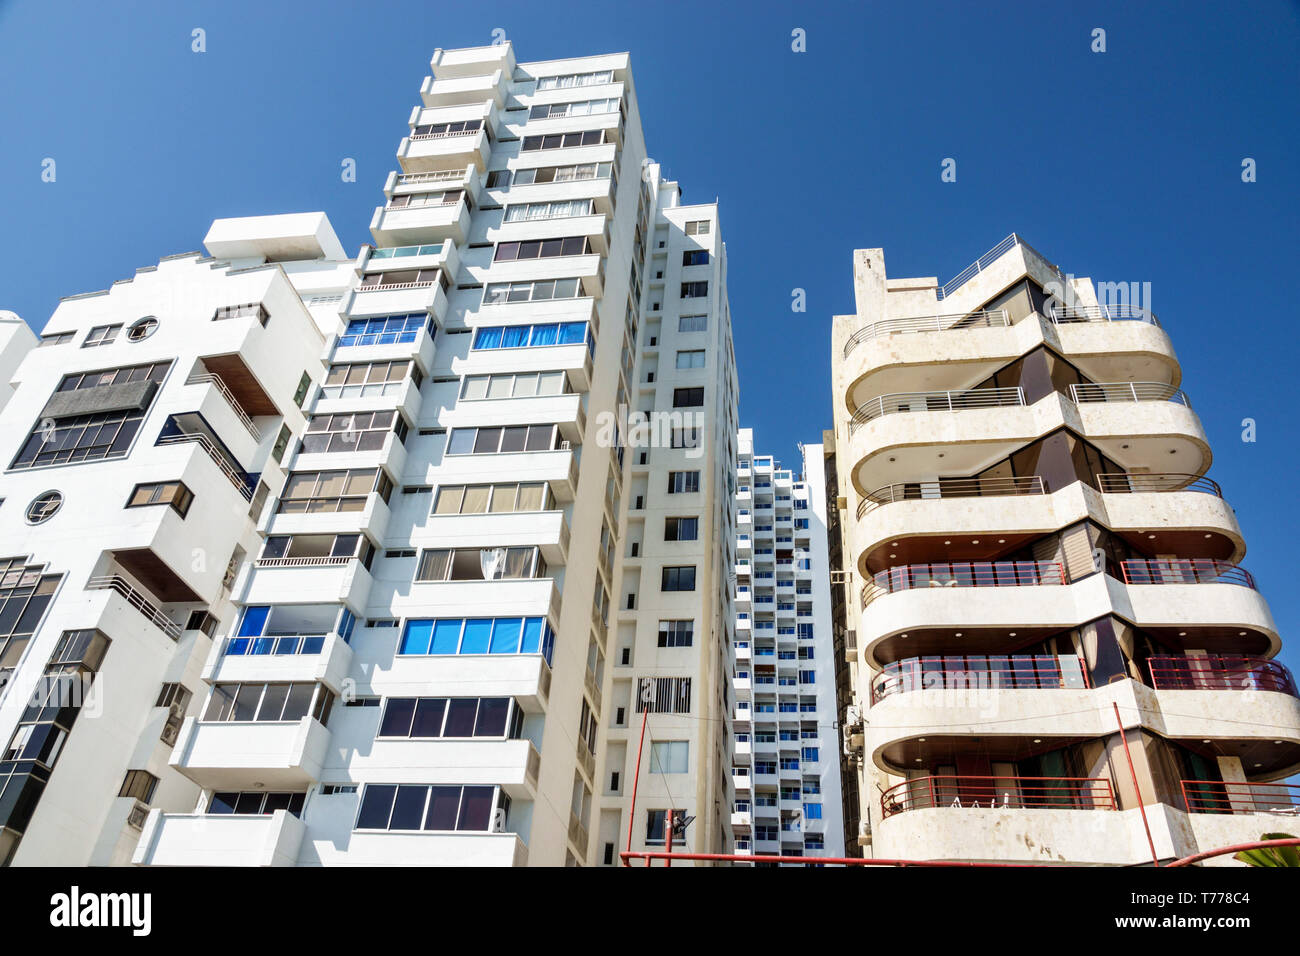 Cartagena Colombia, El Laguito, Hochhaus Wolkenkratzer Gebäude Wohngebäude Wohngebäude, Balkone, zeitgenössische Architektur, Stockfoto